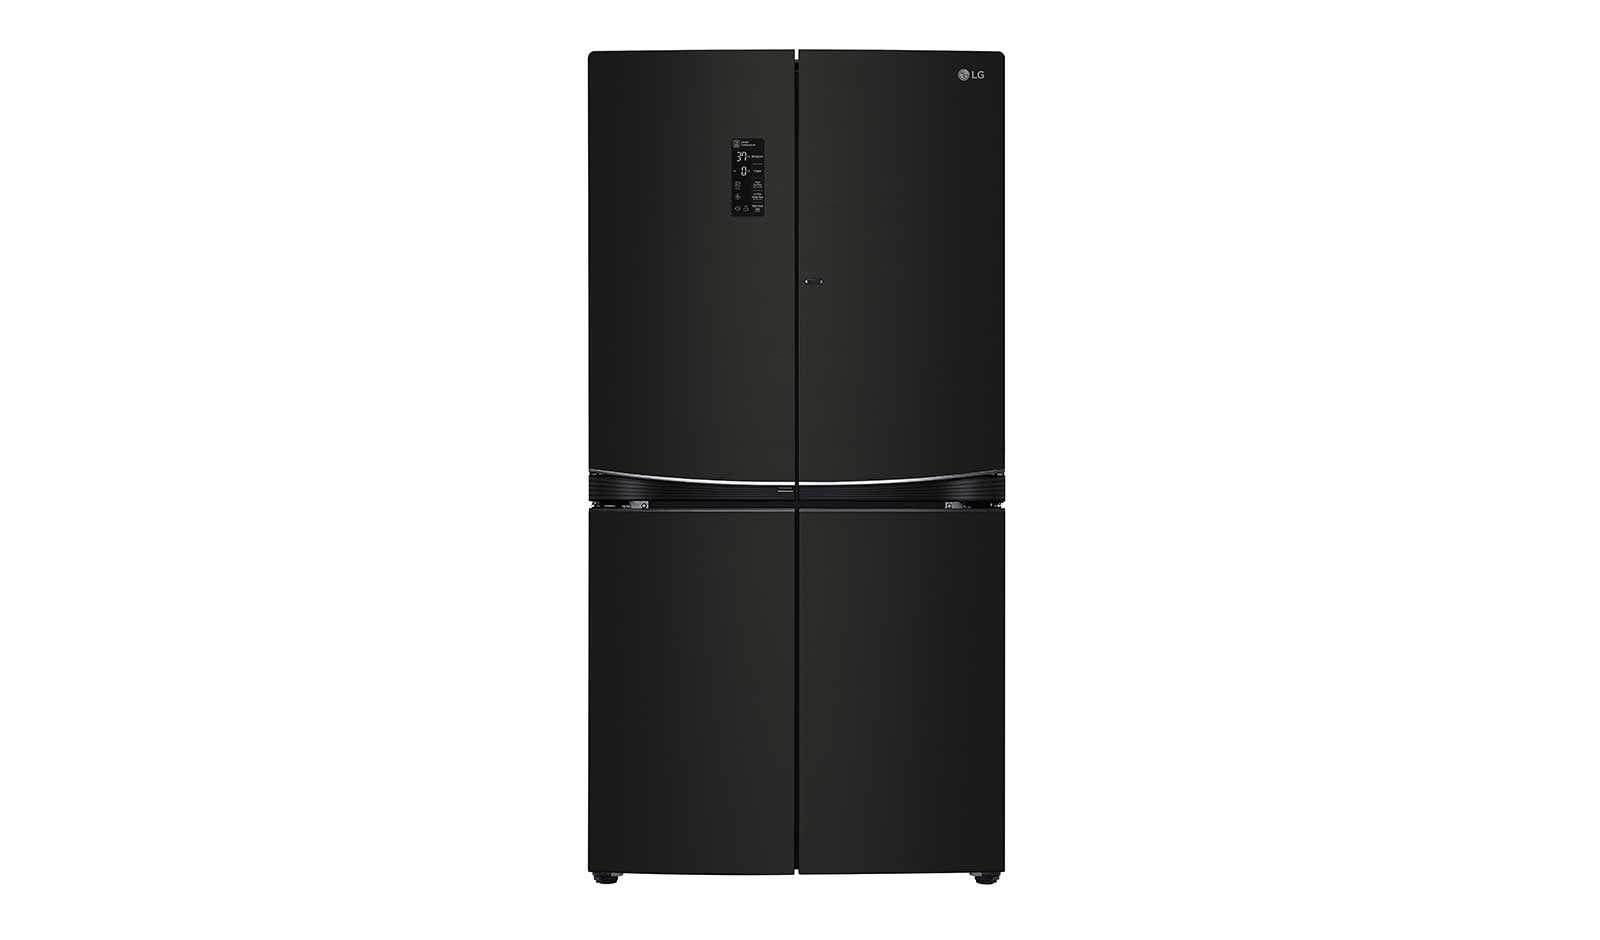 Обзор лучших моделей холодильников lg ноуфрост ga-b419 sqql, lg ga-b489 tgbm, lg gr-m802 hmhm, lg gr-m802 hehm, lg ga-b489 tgrf